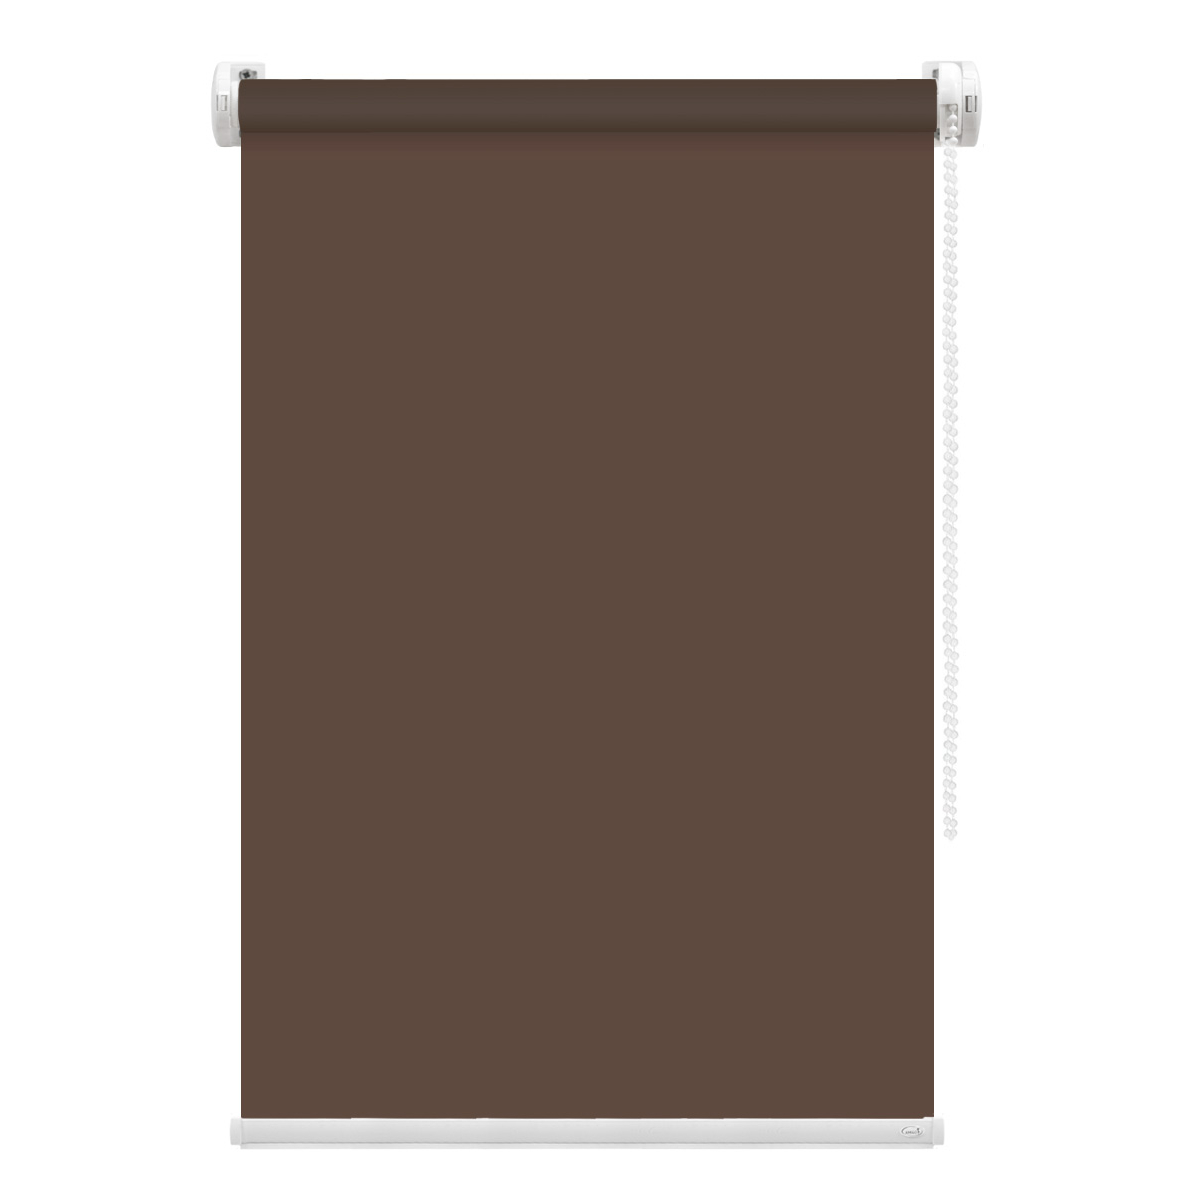 Рулонная штора FixLine Amigo Basic коричневая 80х160 см рулонная штора fixline amigo basic коричневая 65х160 см